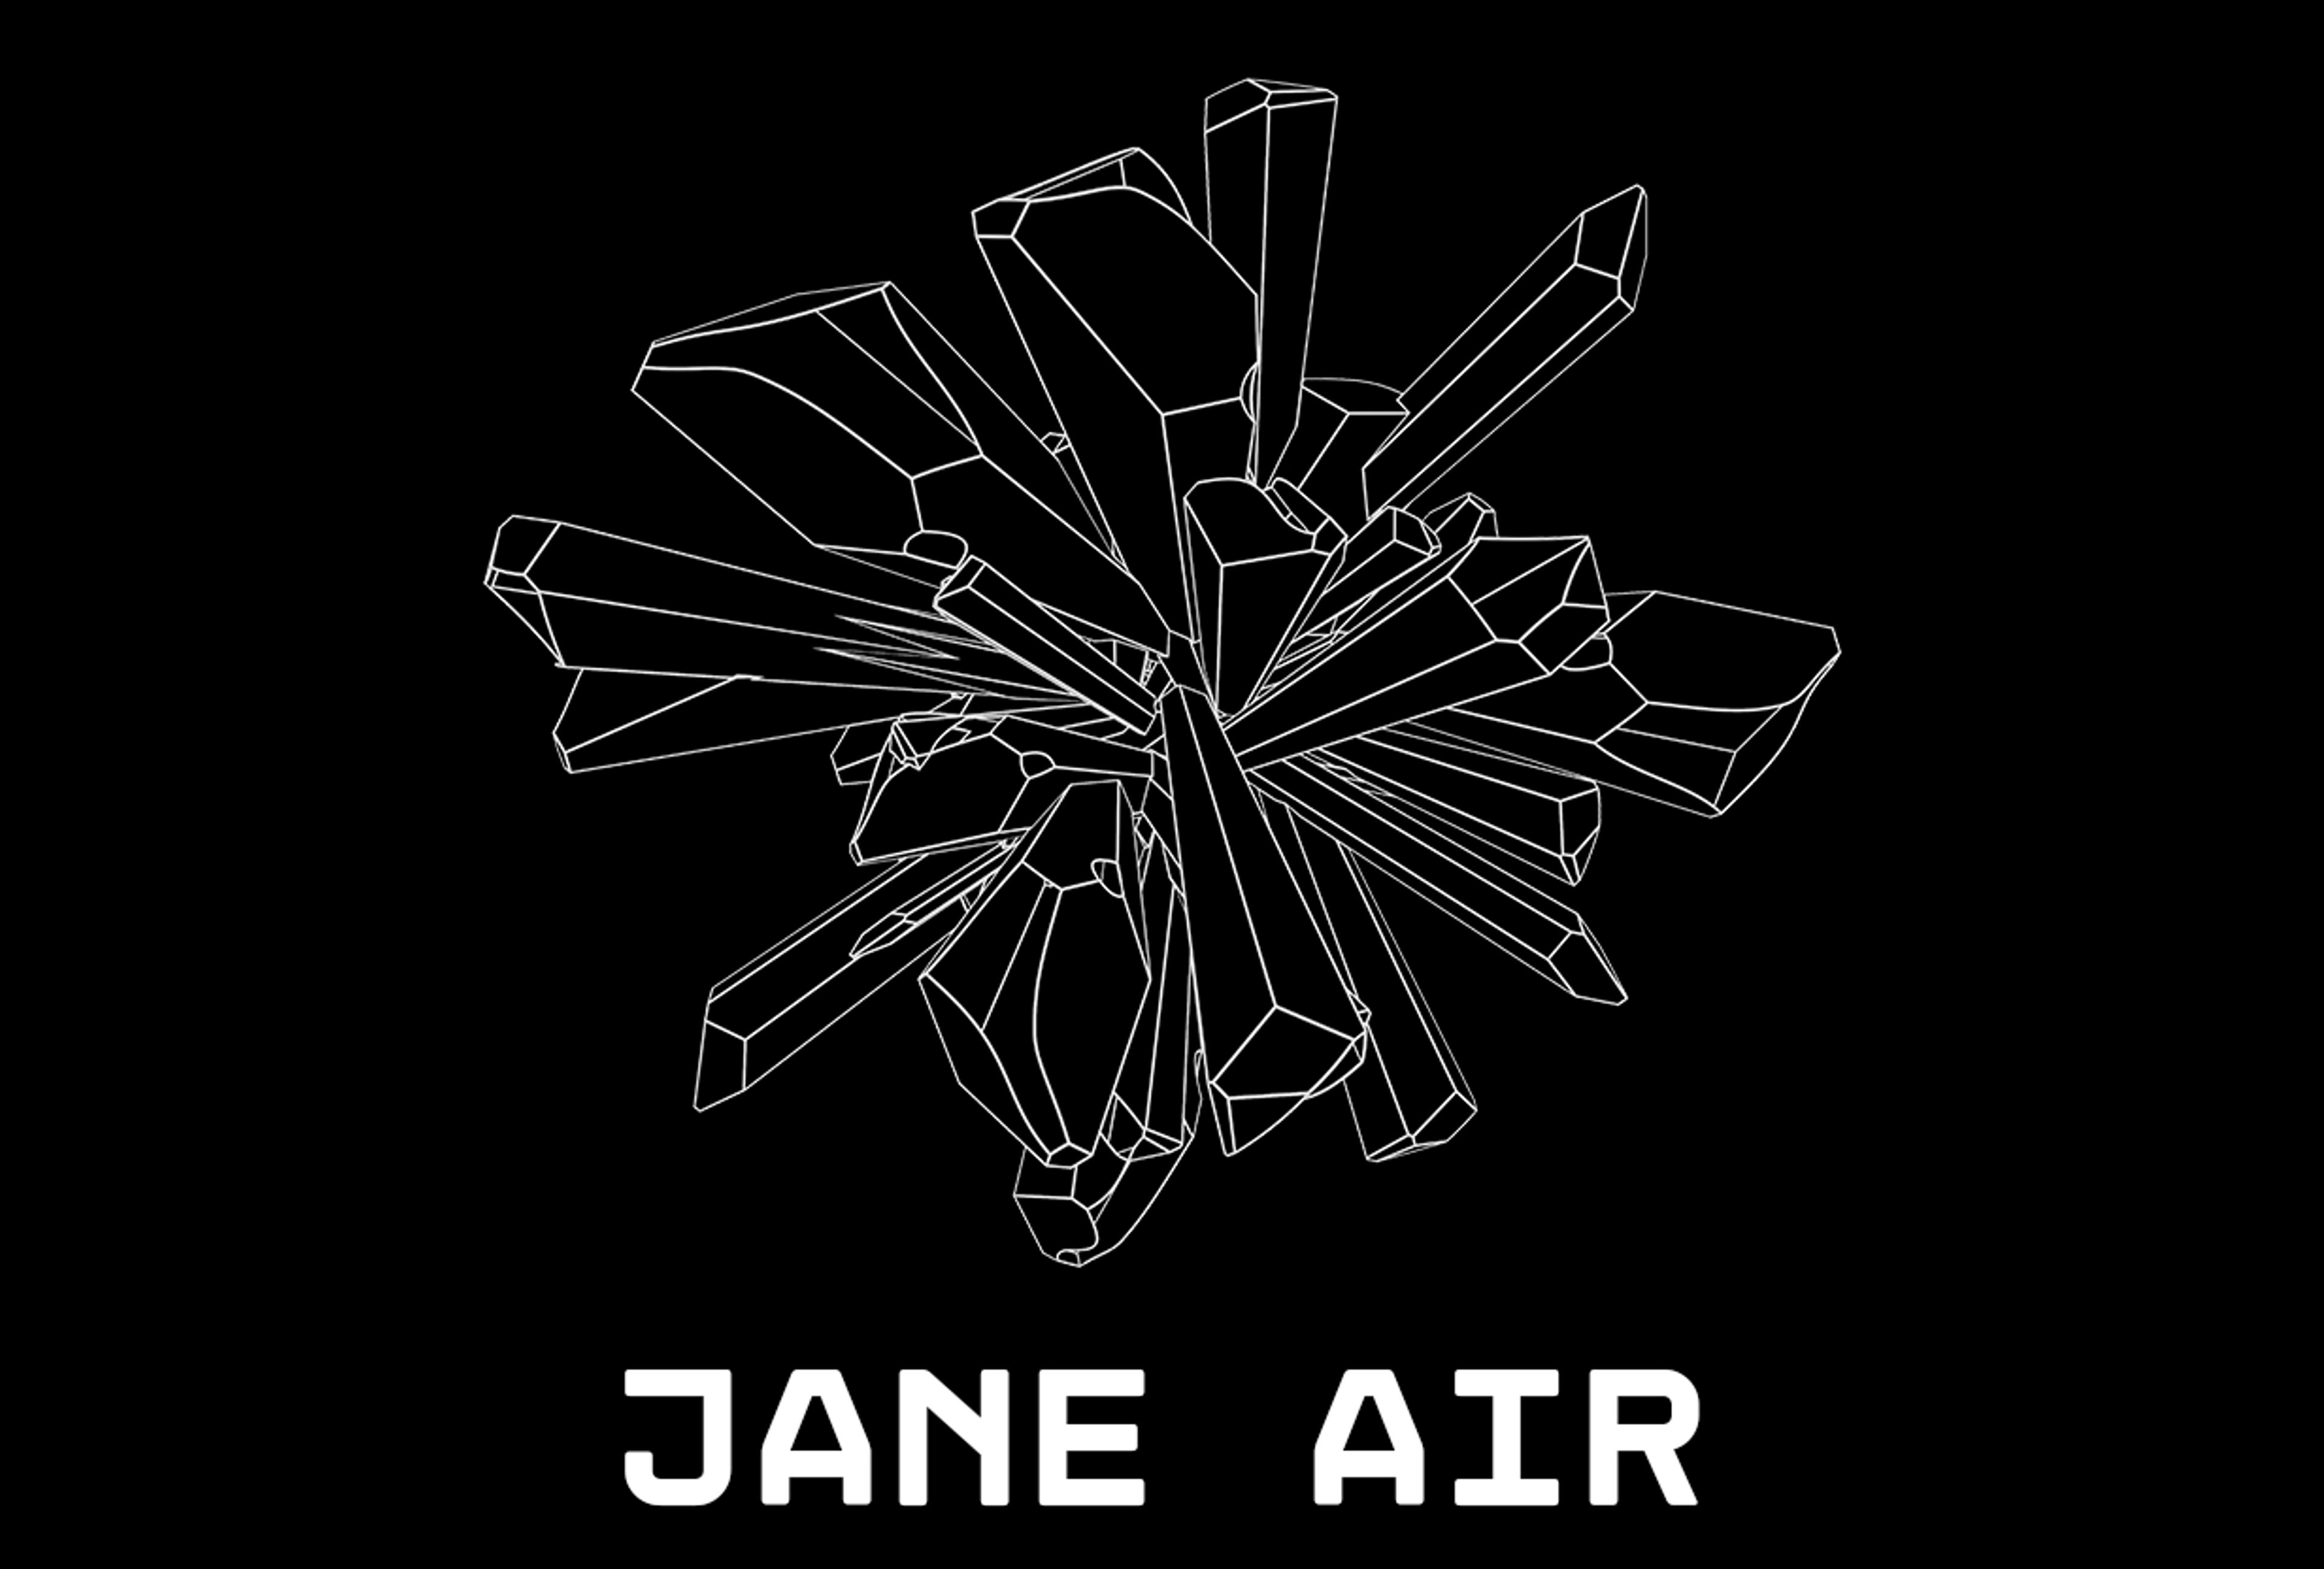 JANE AIR